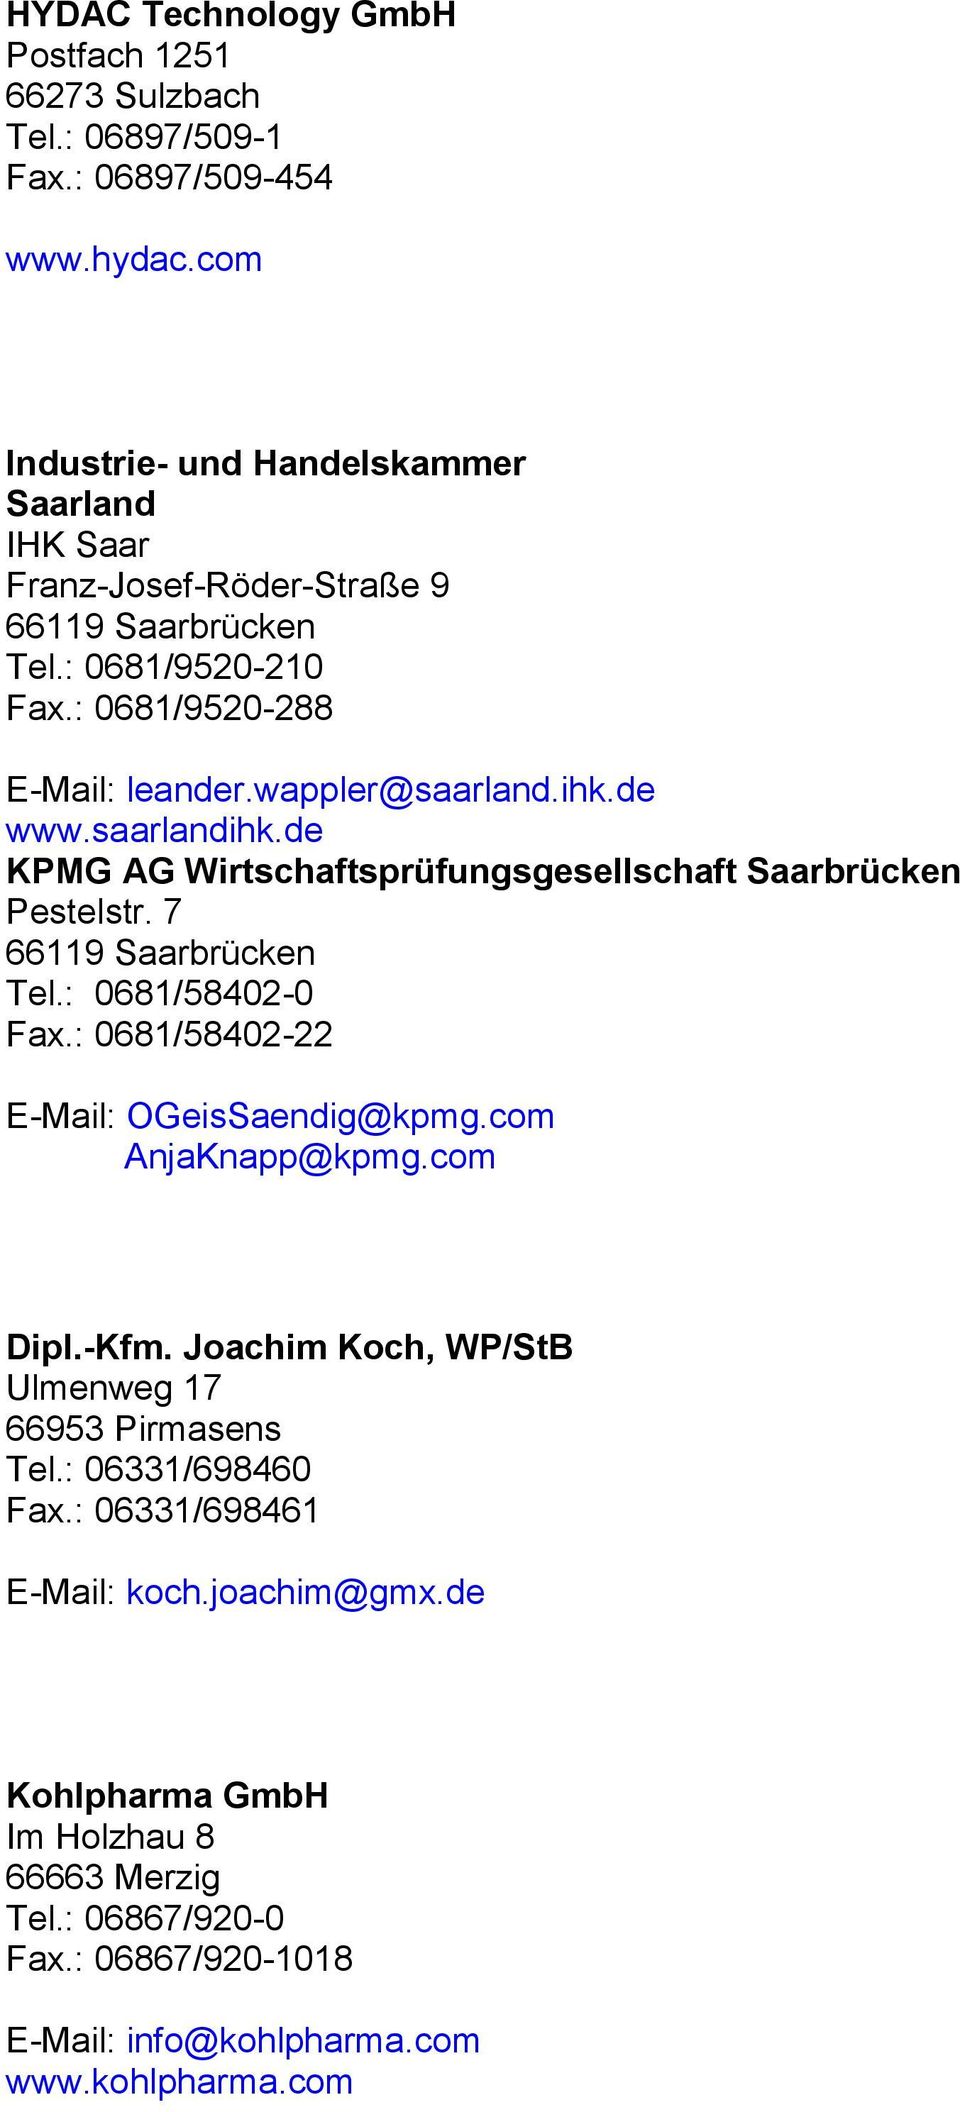 saarlandihk.de KPMG AG Wirtschaftsprüfungsgesellschaft Saarbrücken Pestelstr. 7 Tel.: 0681/58402-0 Fax.: 0681/58402-22 E-Mail: OGeisSaendig@kpmg.com AnjaKnapp@kpmg.